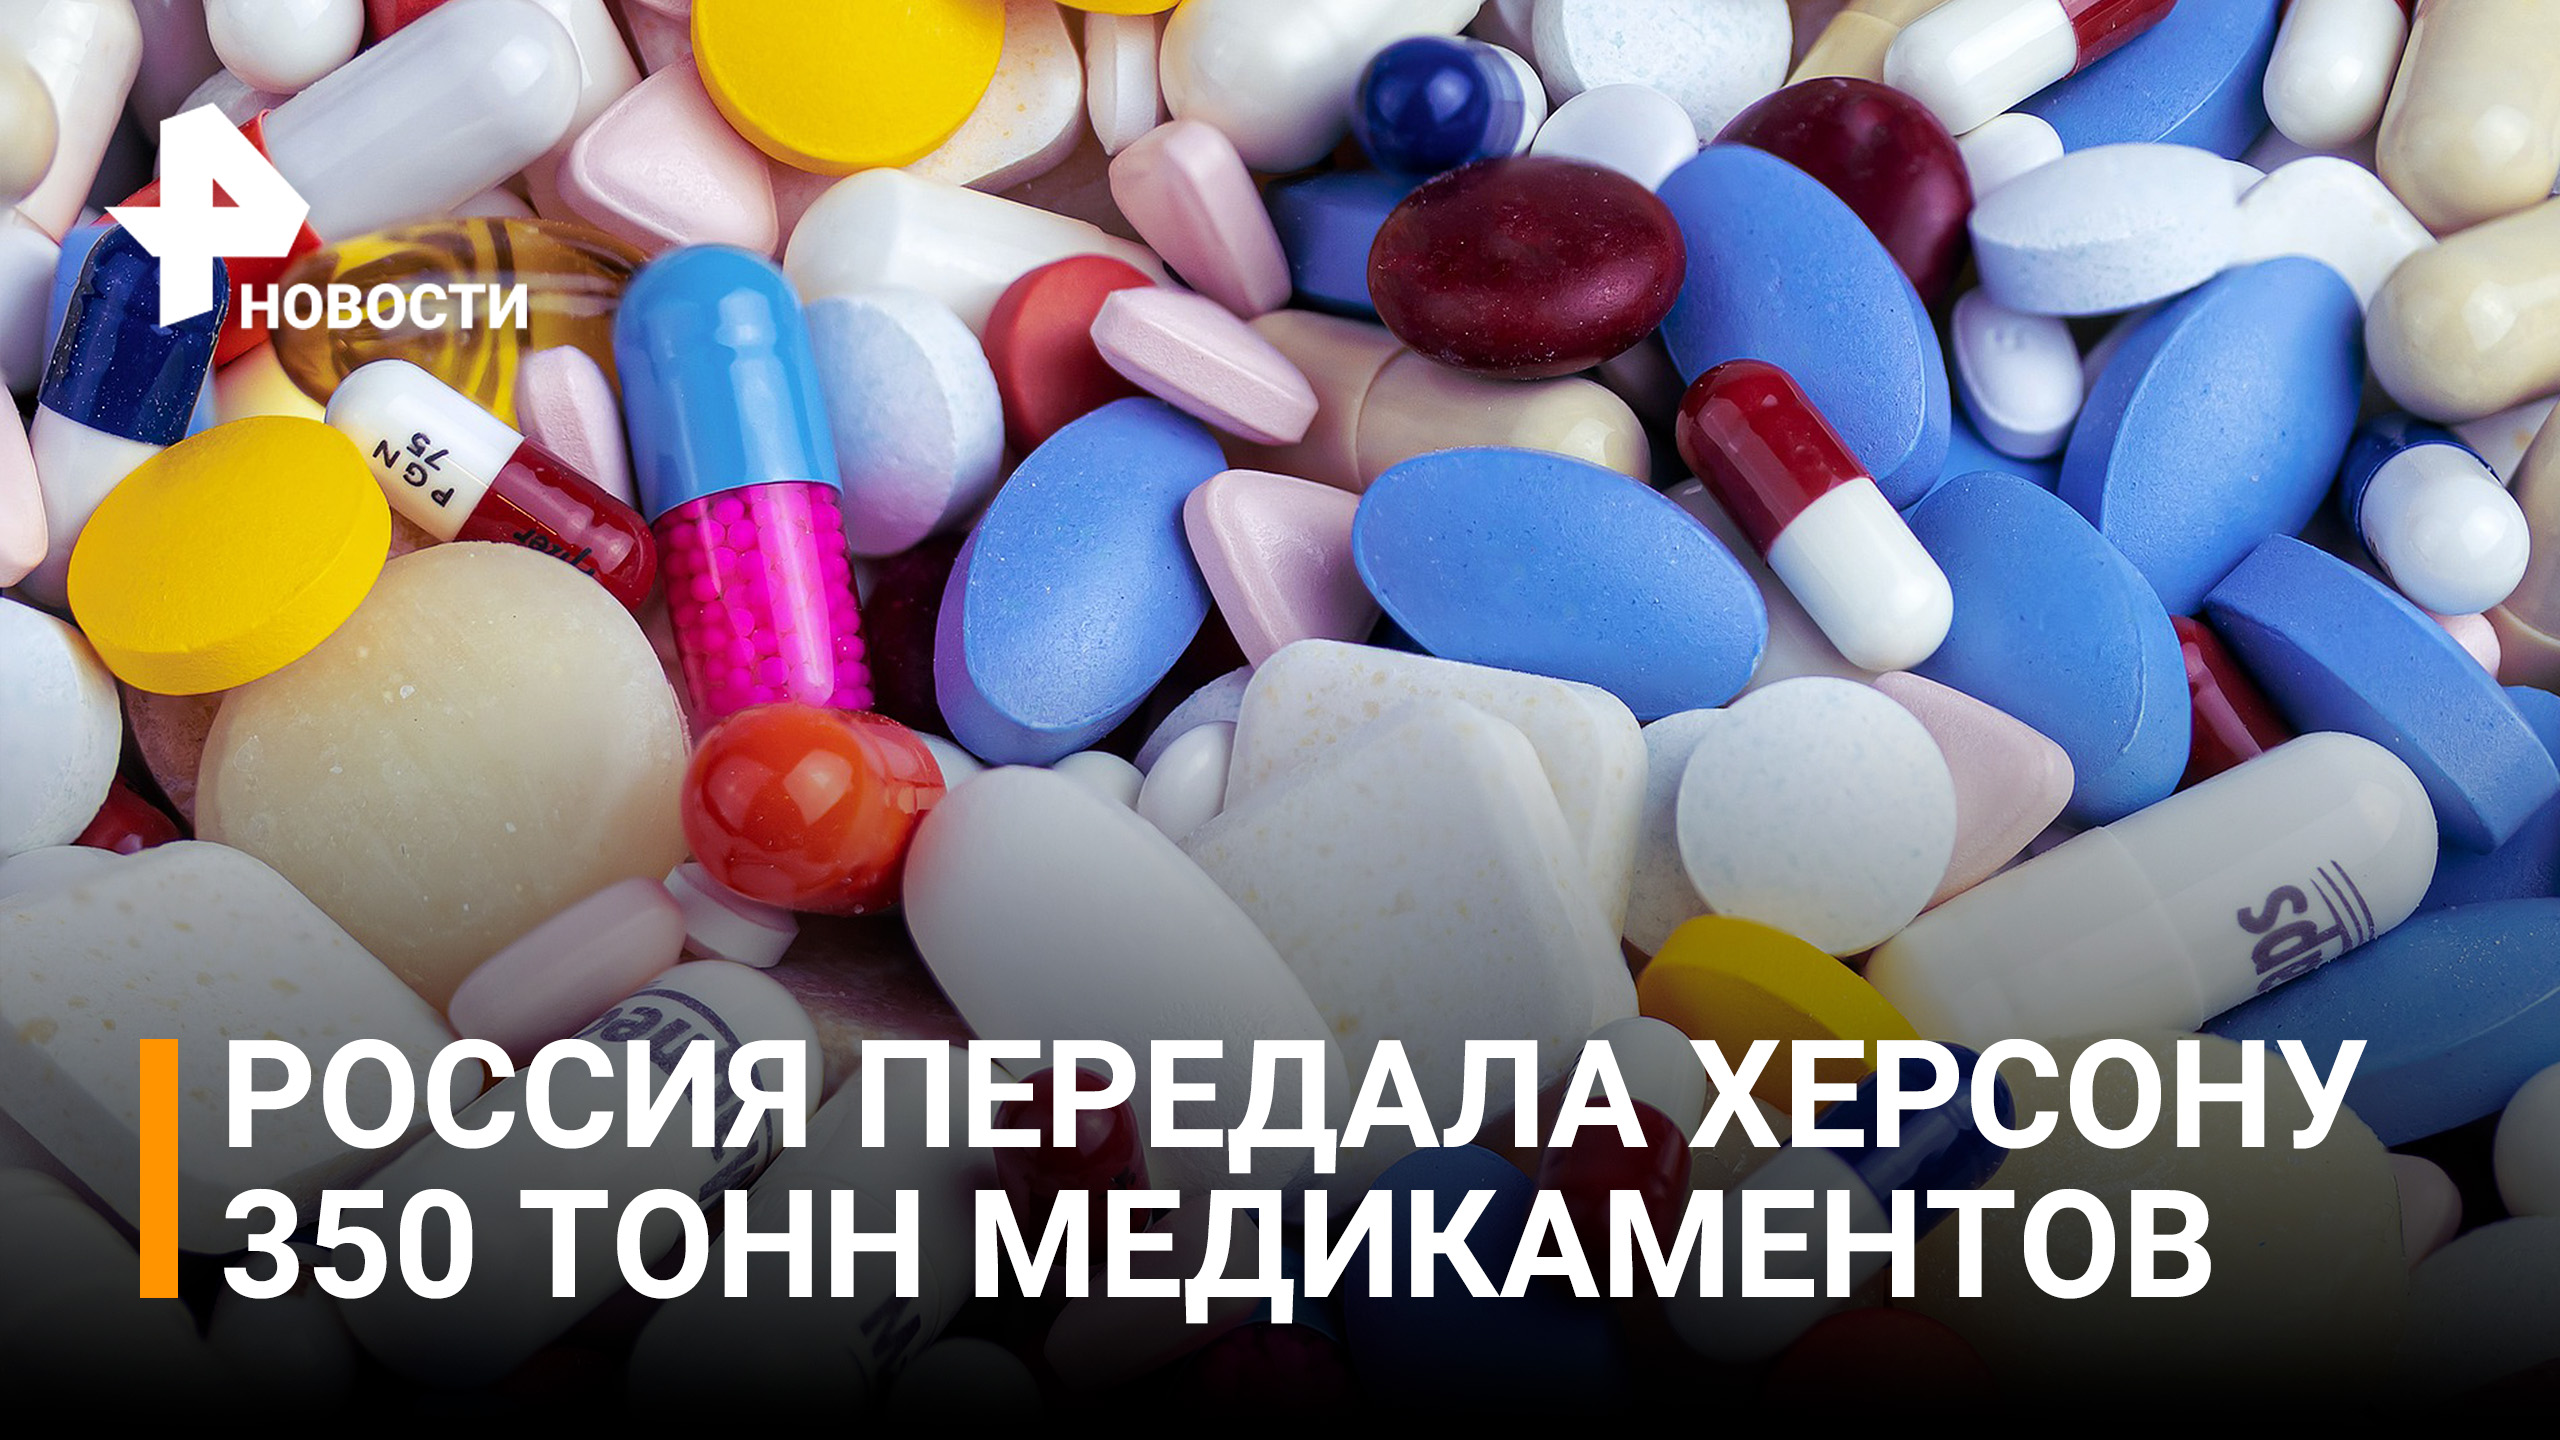 Россия передала более 350 тонн медикаментов Херсонской области / РЕН Новости